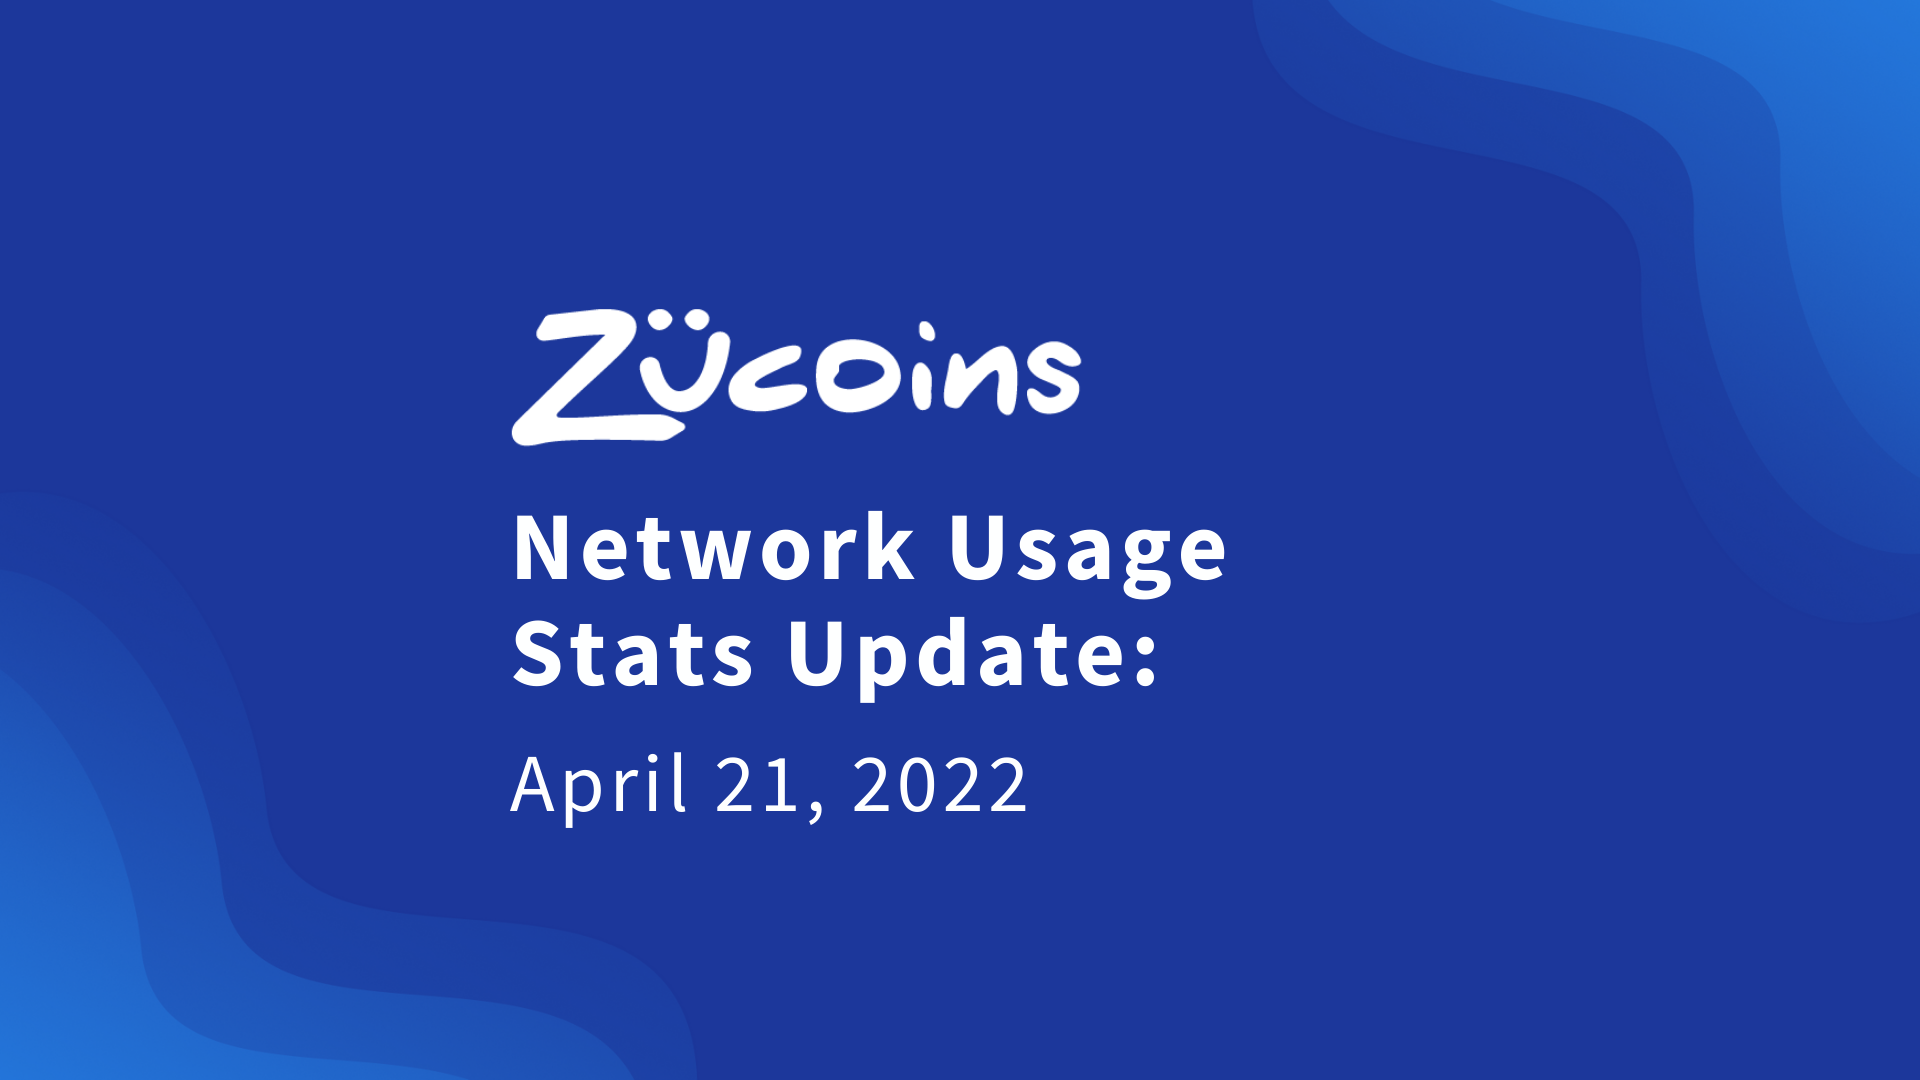 Zucoins Network